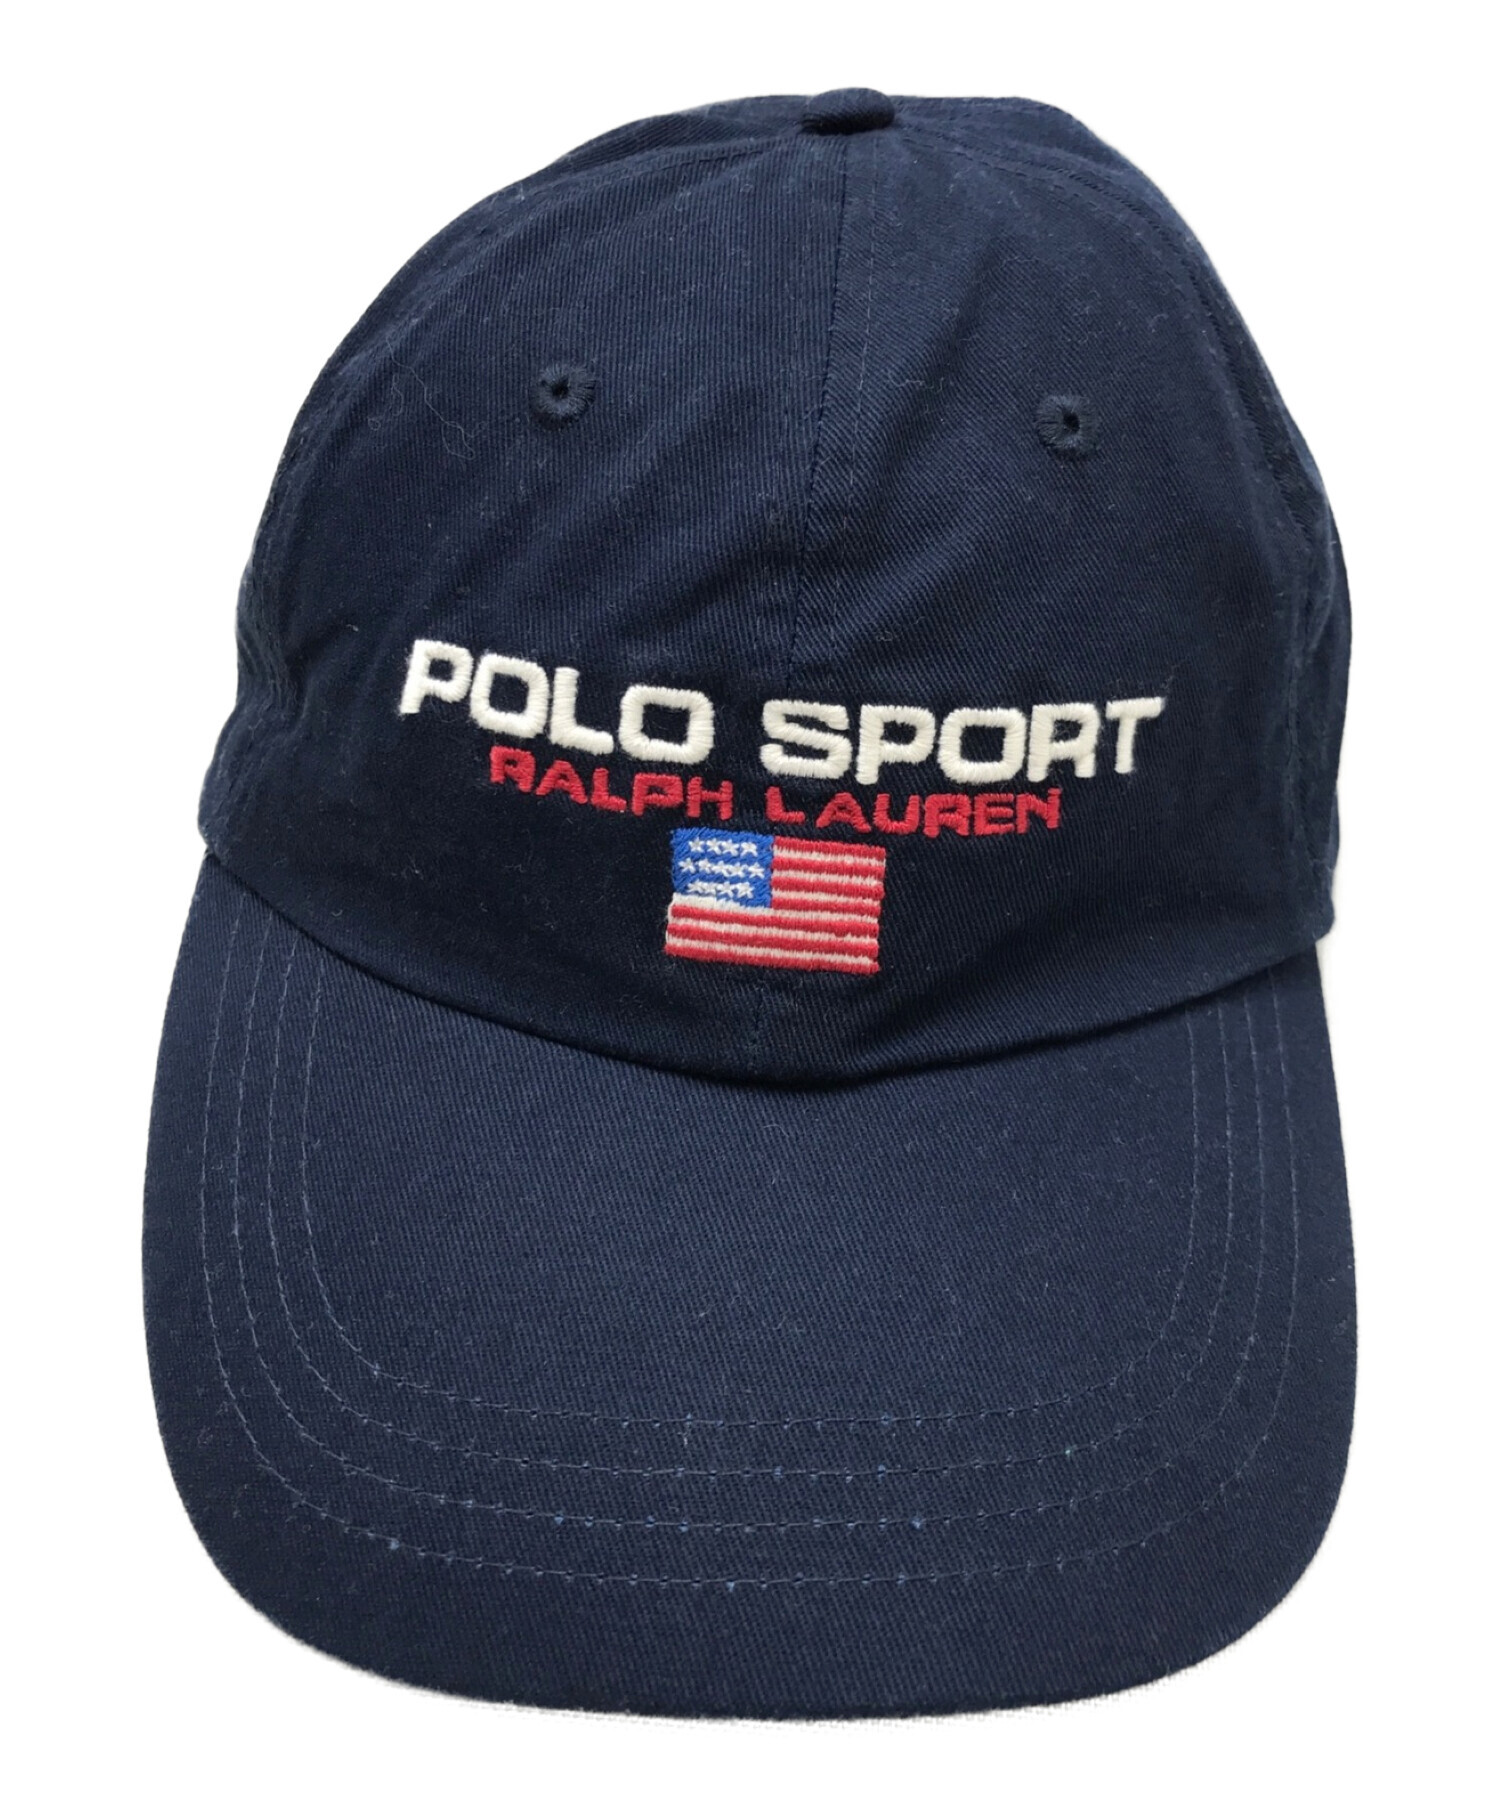 POLO SPORT (ポロスポーツ) ロゴ刺繍キャップ ネイビー×グリーン